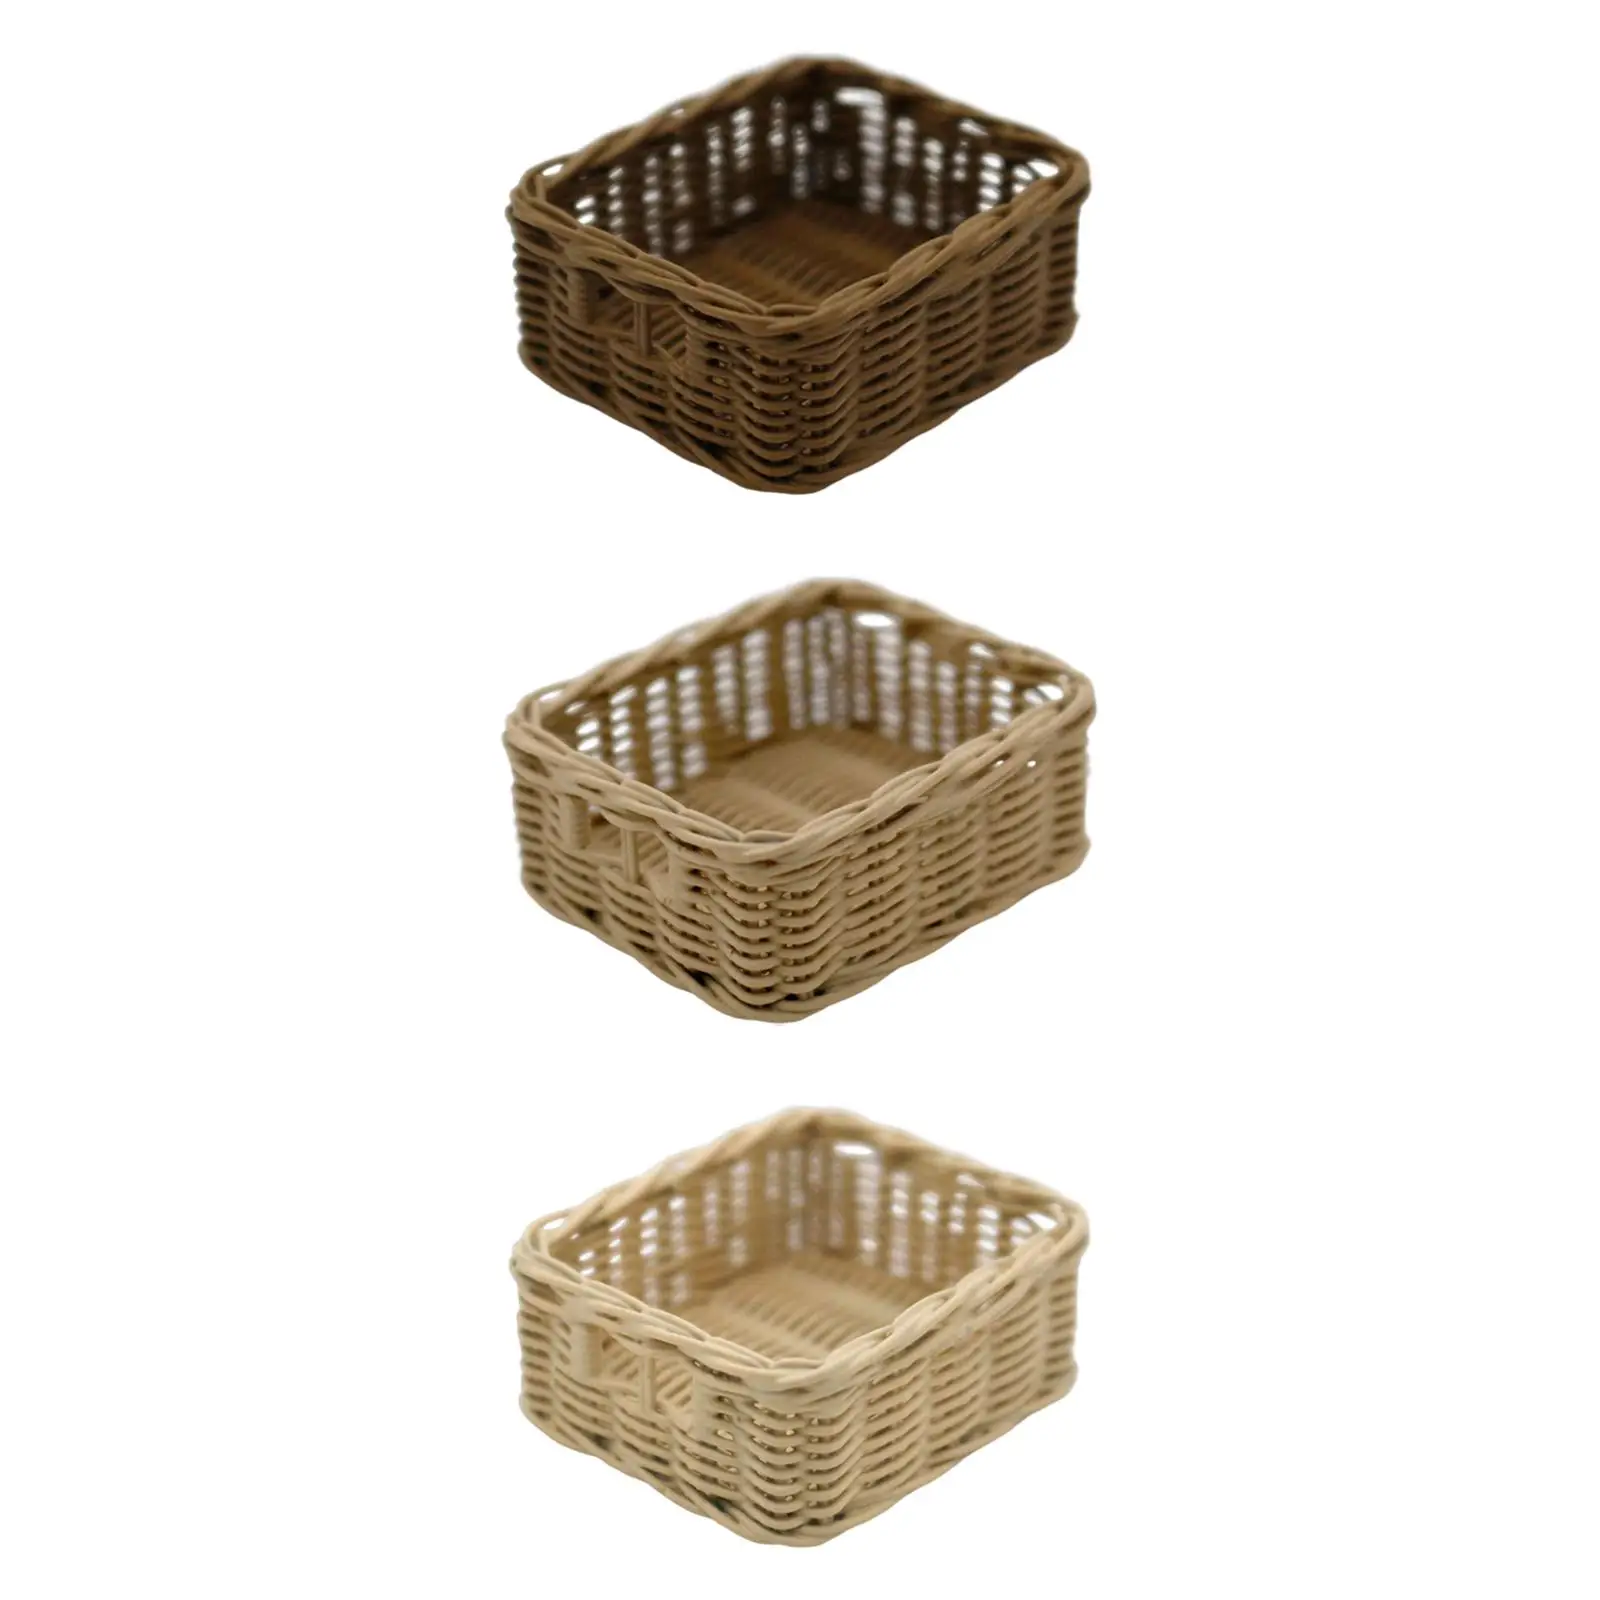 1:6 Dollhouse Storage Basket Bread Basket Mini Resin Baskets Dollhouse Accessories for Dollhouse Bedroom Home Kitchen Garden